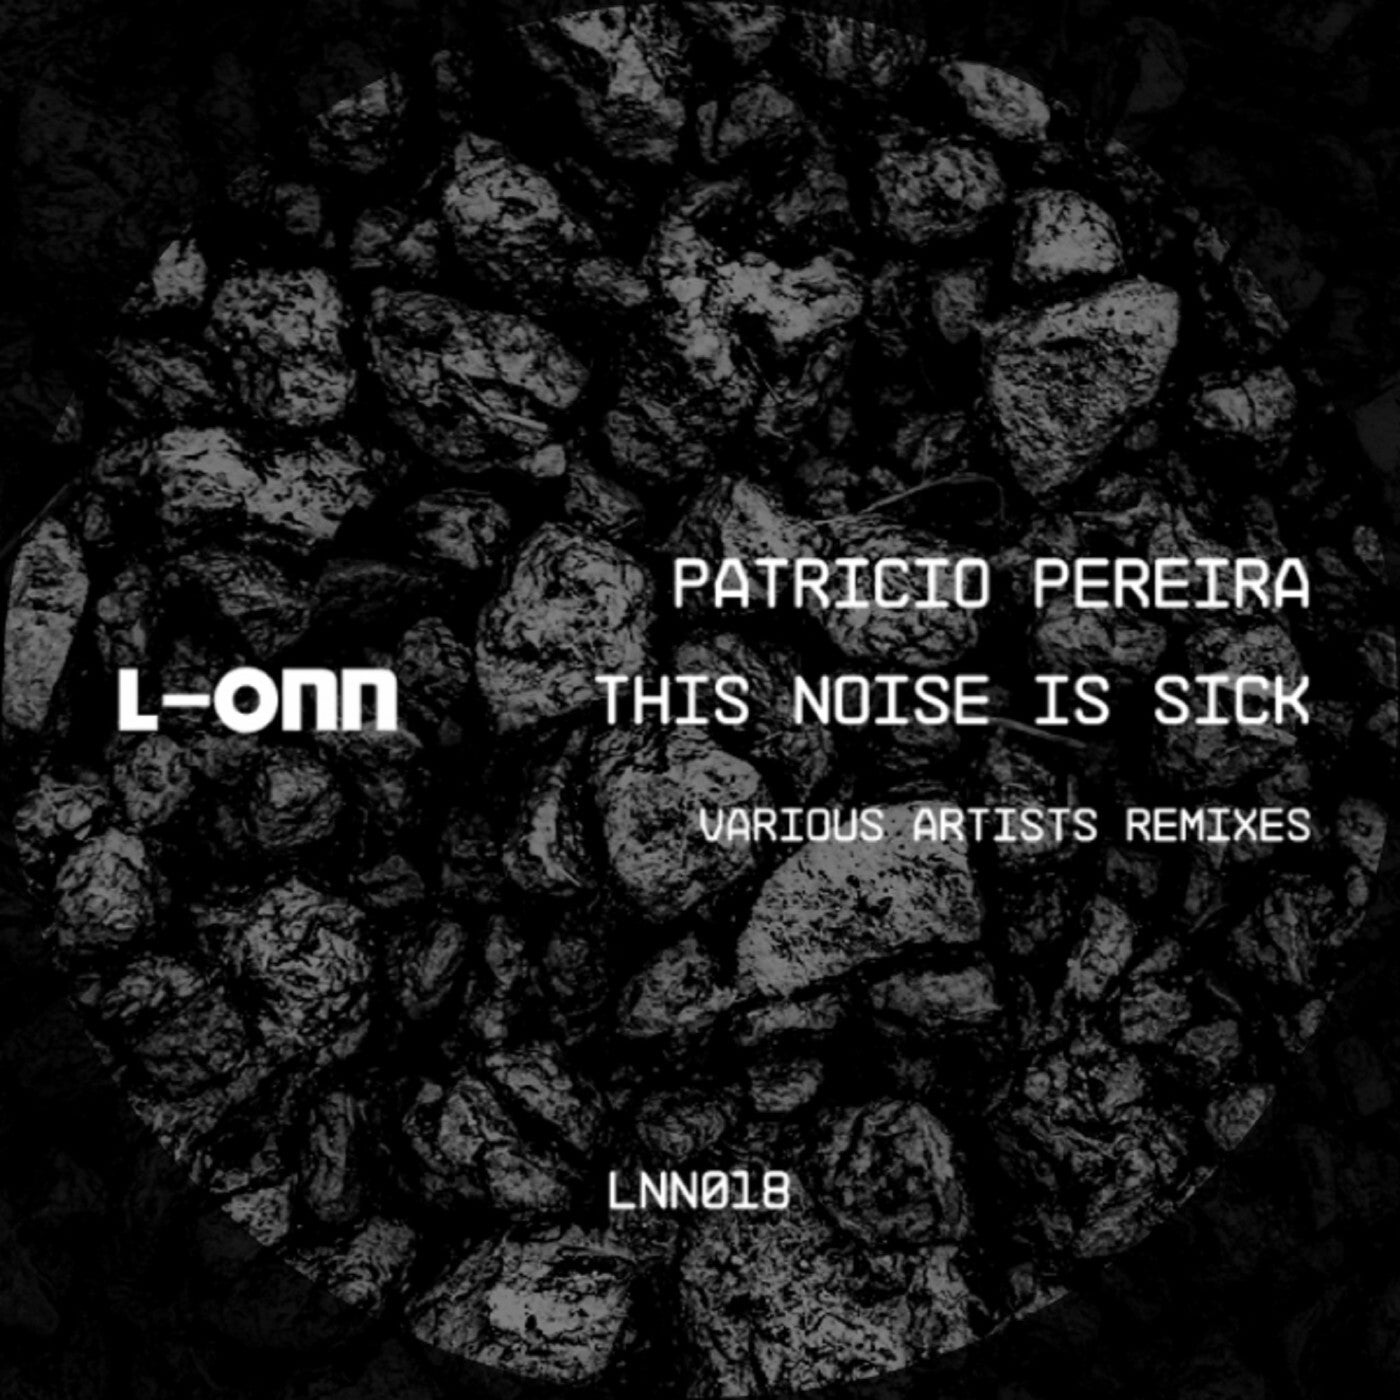 Patricio Pereira - This Noise Is Sick [L-ONN Records]